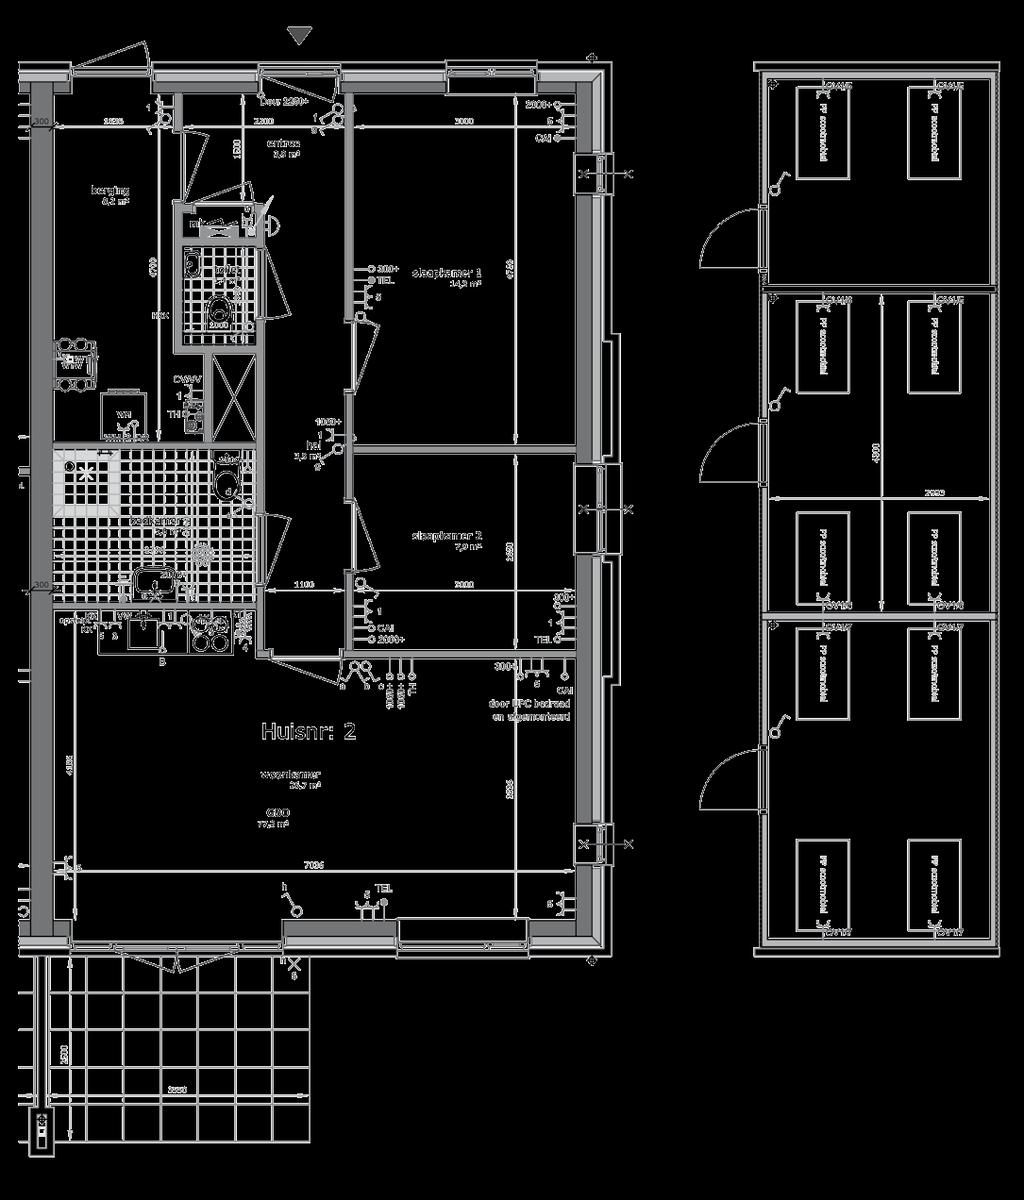 De Begane grond Begane grond De 2-8 2 appartementen: 2 en 8 2 appartementen: 4 en 6 4-6 Dit type is gelegen op de begane grond aan de linkeren rechterzijde van het gebouw als elkaars spiegelbeeld.